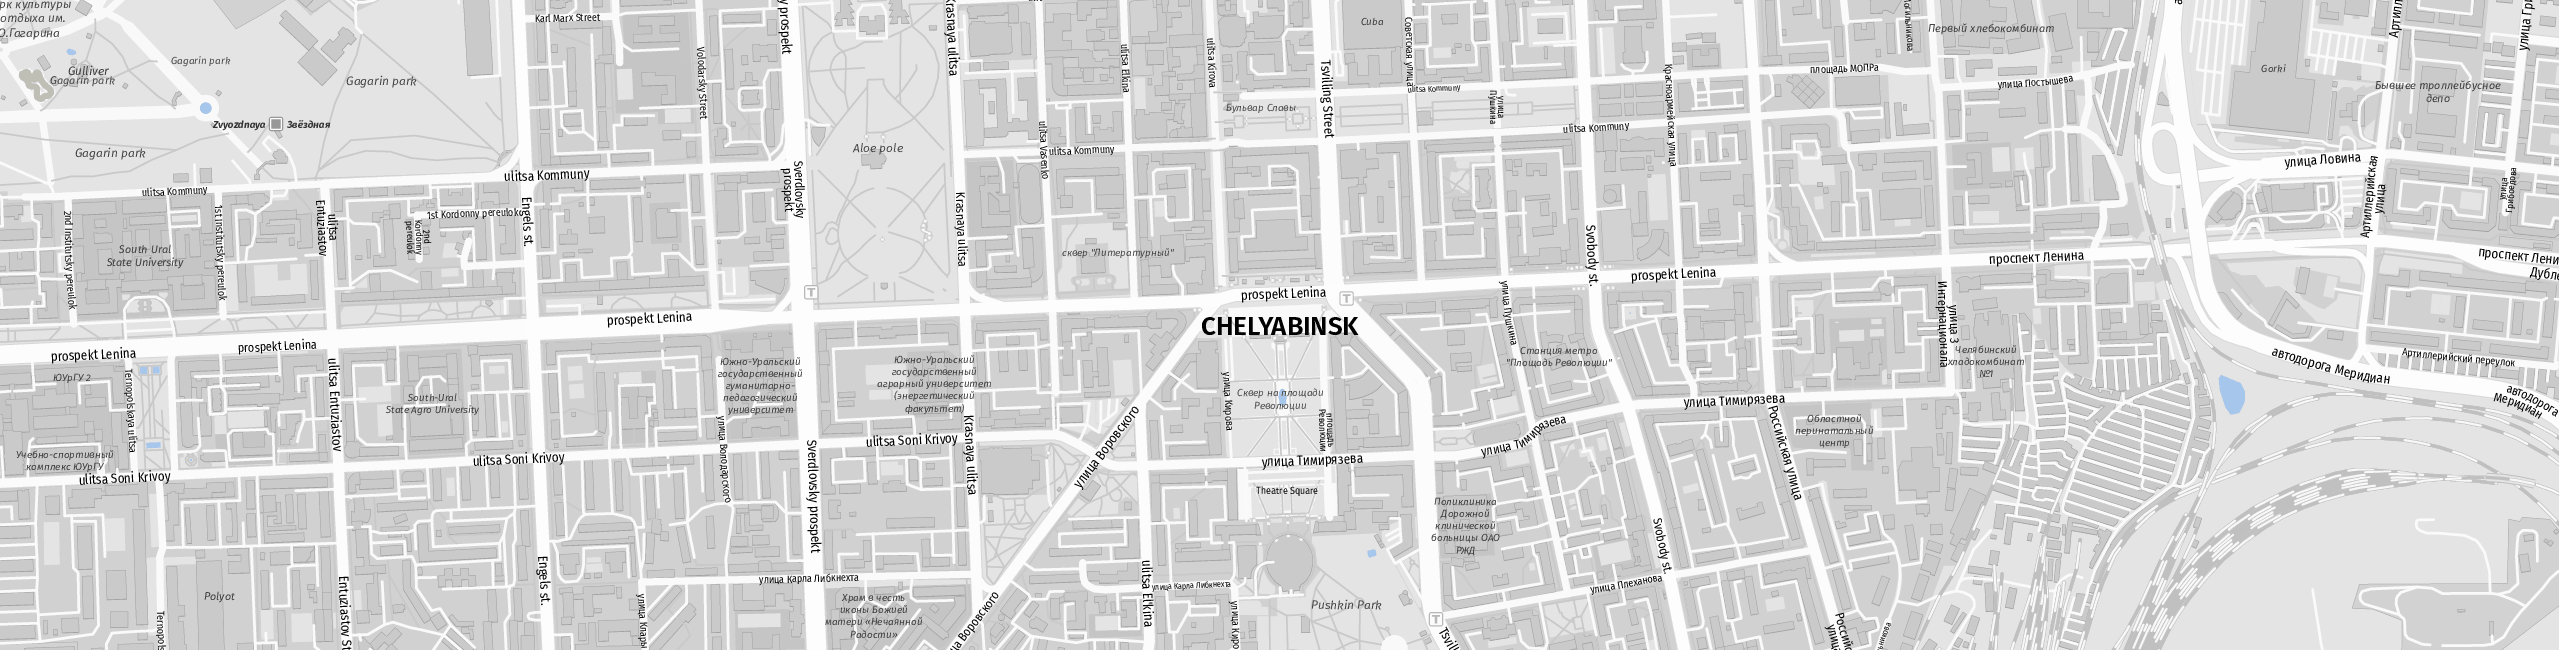 Stadtplan Chelyabinsk zum Downloaden.